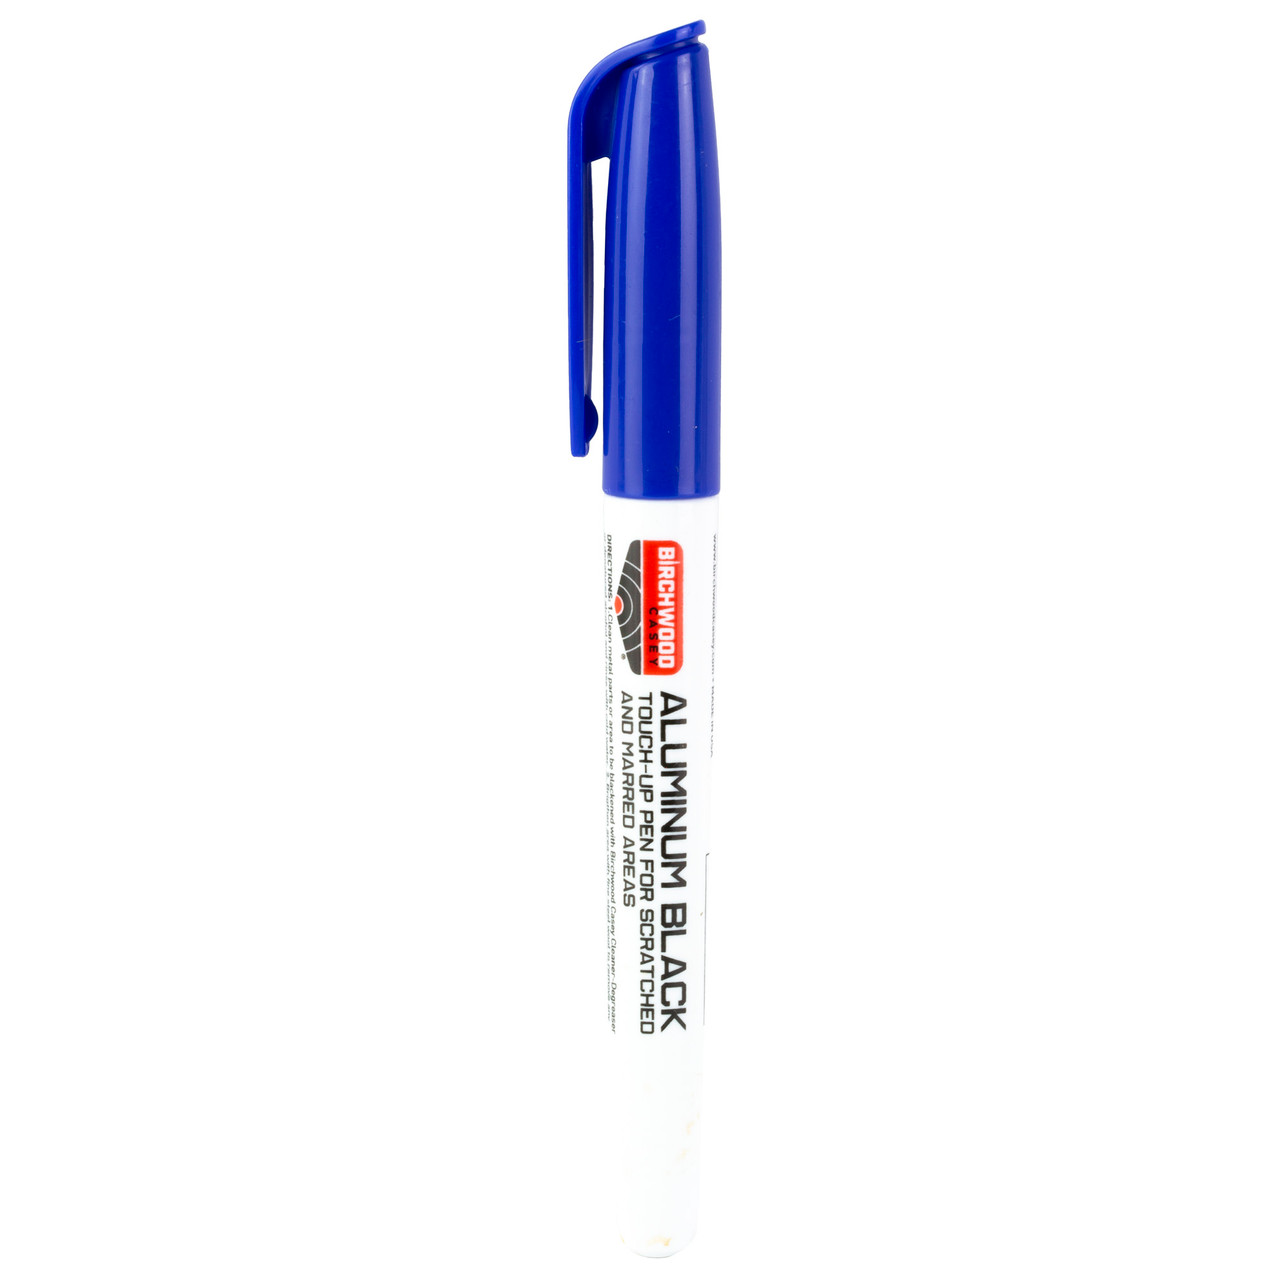 Birchwood Casey Aluminum Black, Touch Up Pen, 6 Pack 15121, UPC